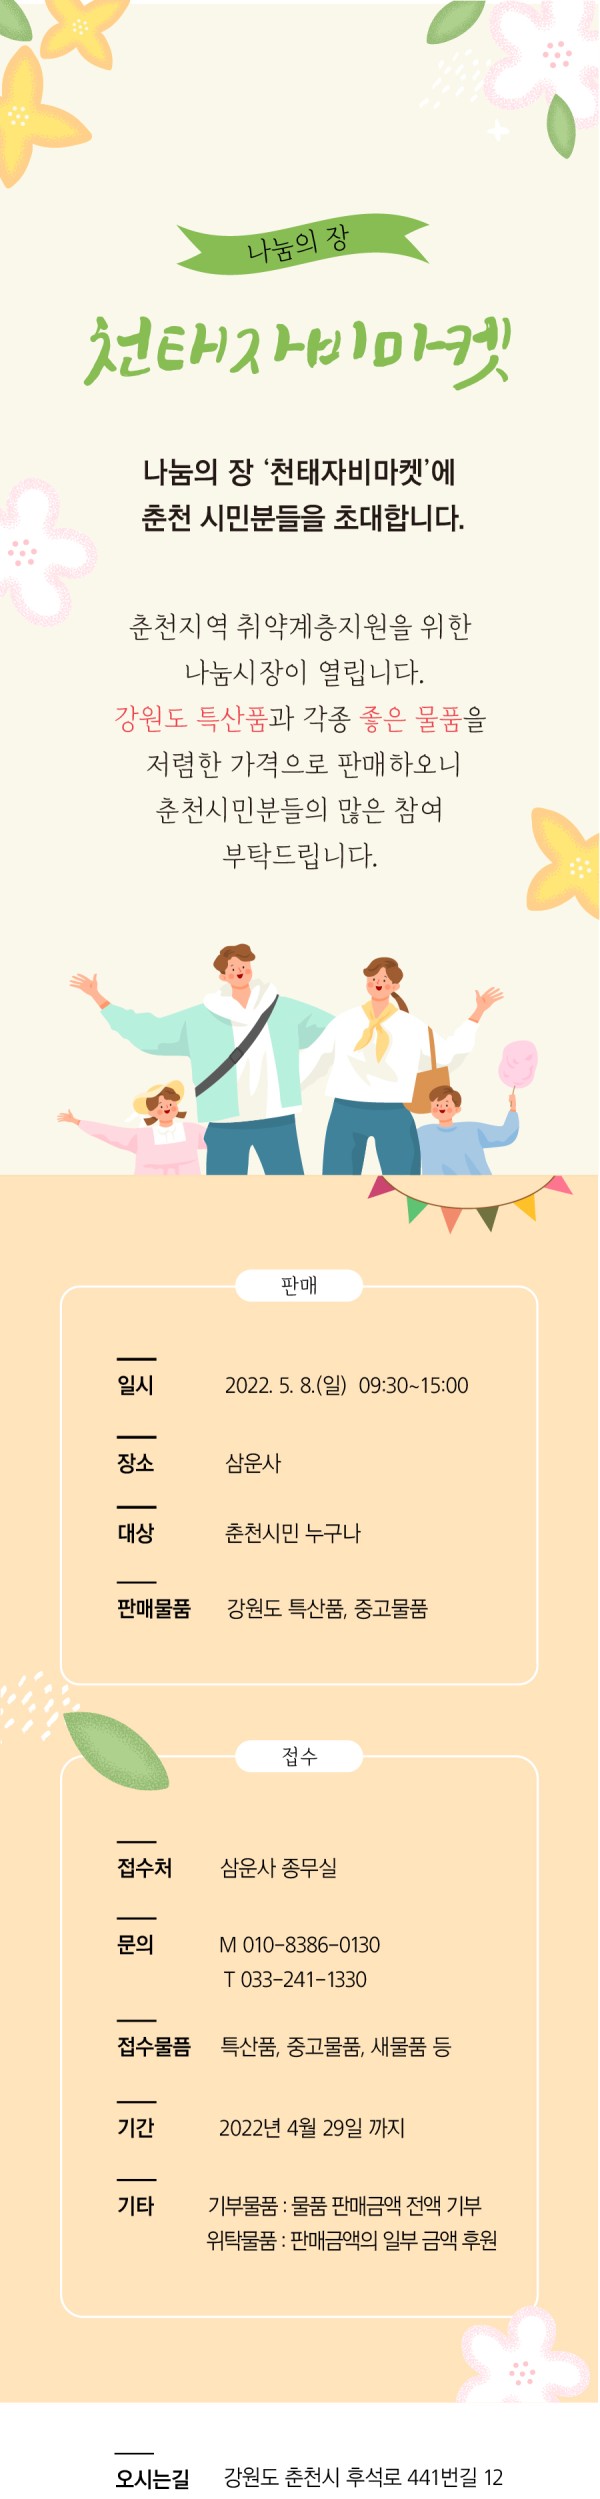 2022-Chuncheon-market-content-1.jpg